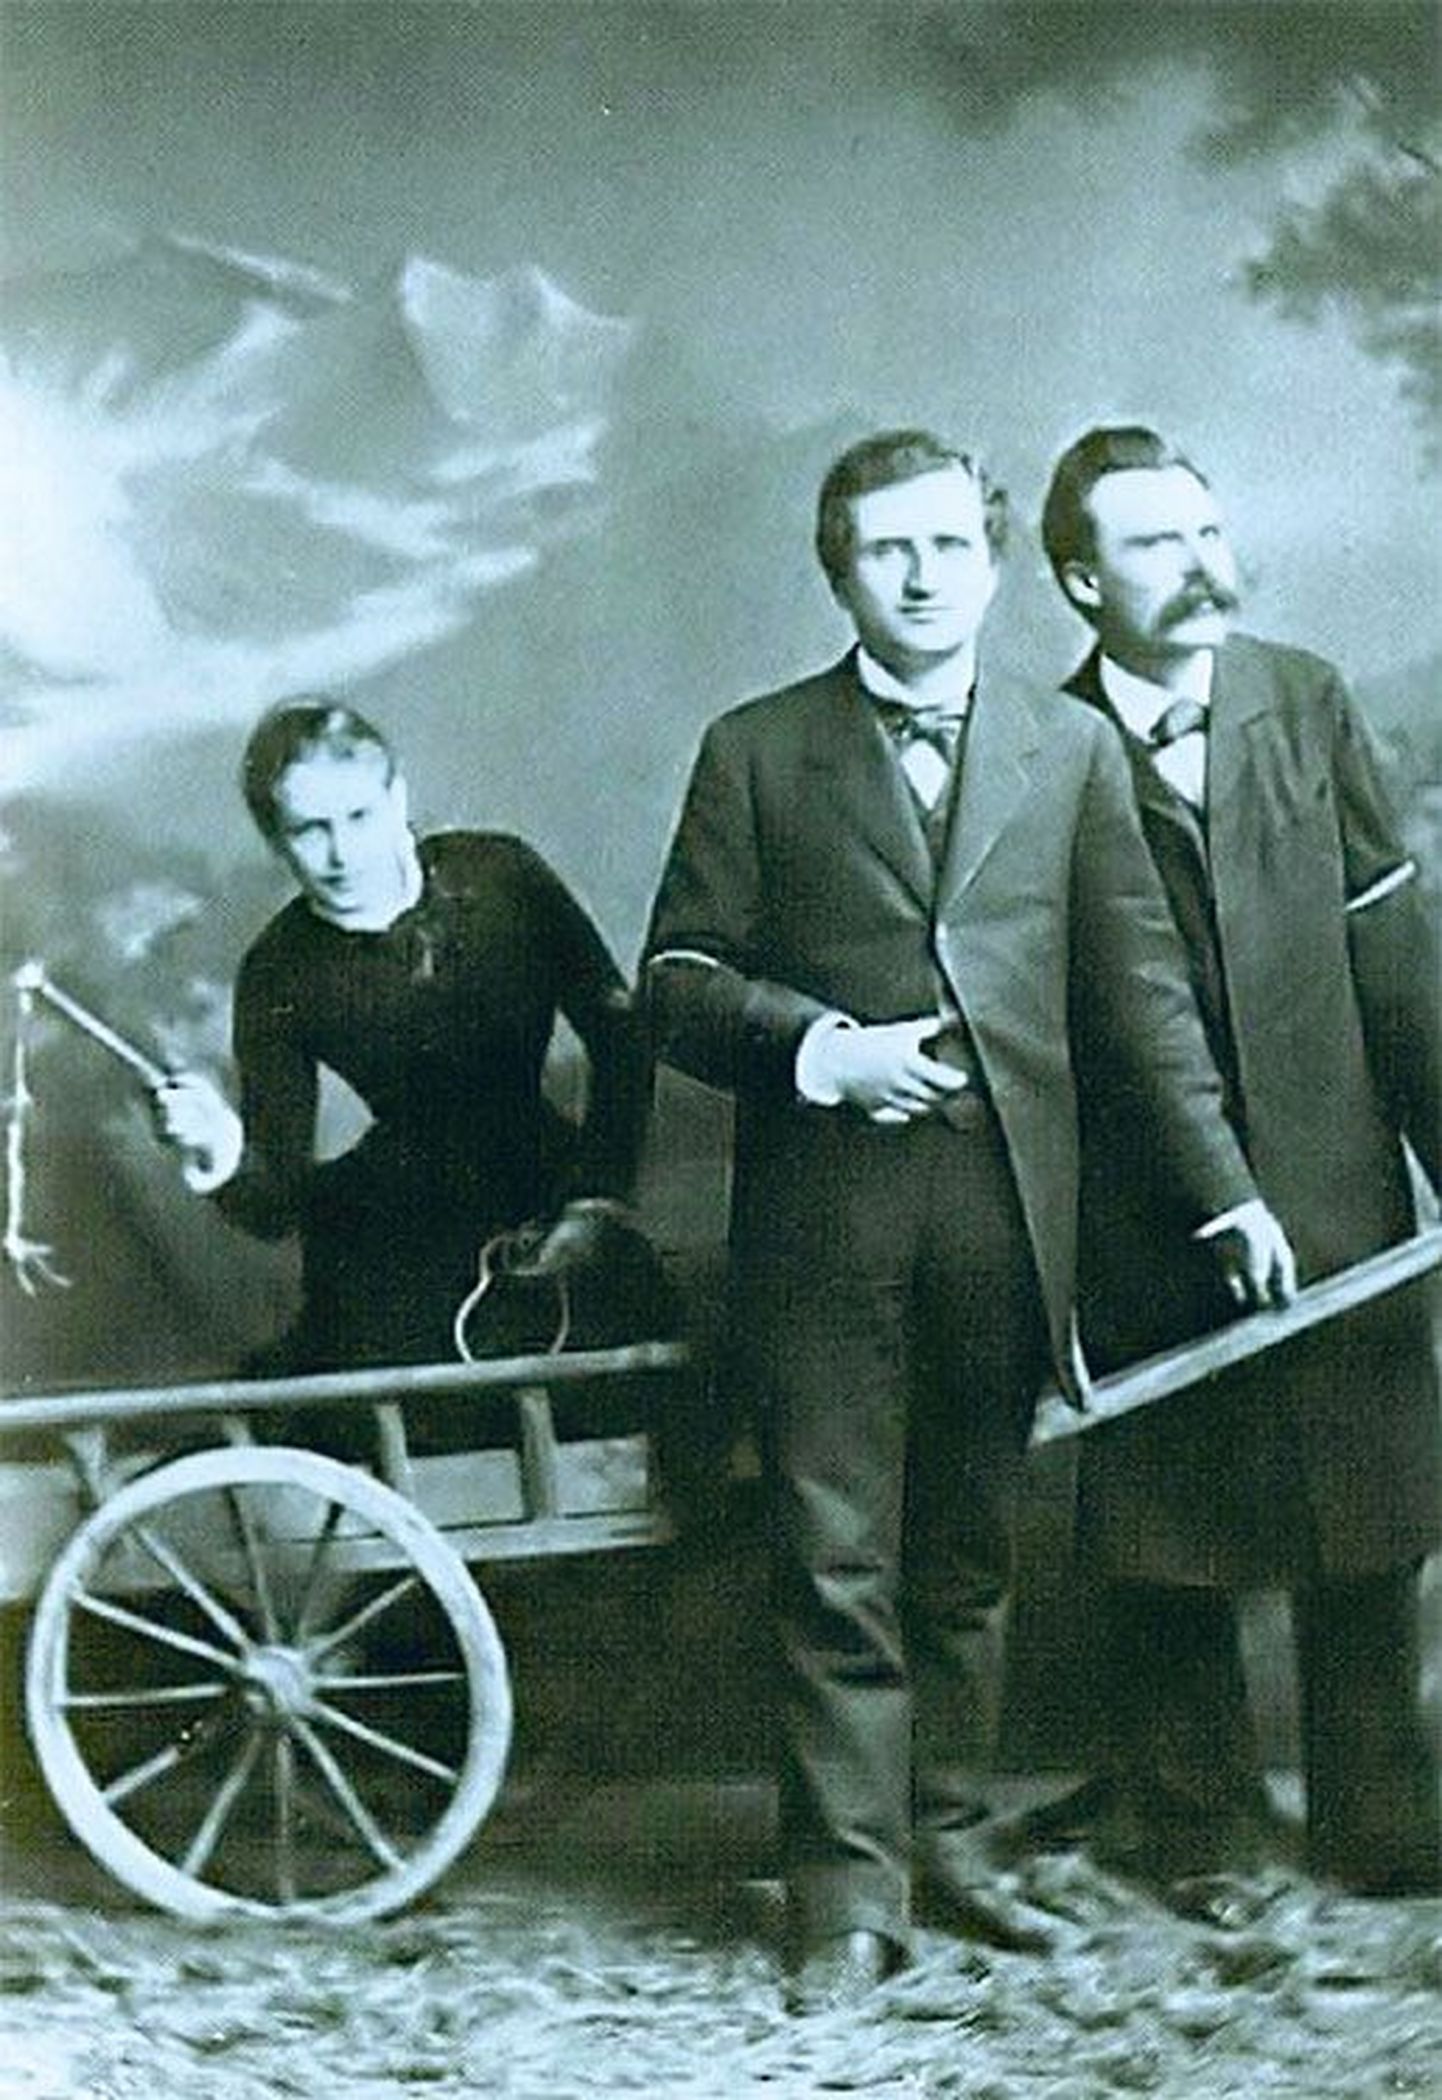 1882. aastal veitsis, Luzernis pildistatud fotolavastusel juhib, piits käes, kahemeherakendit (Nietzsche (paremal) ja tema filosoofist sõber Paul Rée) vene-saksa esseist, novellist ja psühhoanalüütik Lou Andreas-Salomé, Rée kaaslane ja Nietzsche armastatu. Samal aastal alustatud raamatut «Nõnda kõneles Zarathustra» nimetab Nietzsche hiljem Lou poolt eostatud kirjanduslikuks asenduseks pojale, keda Nietzschel kunagi polnud.